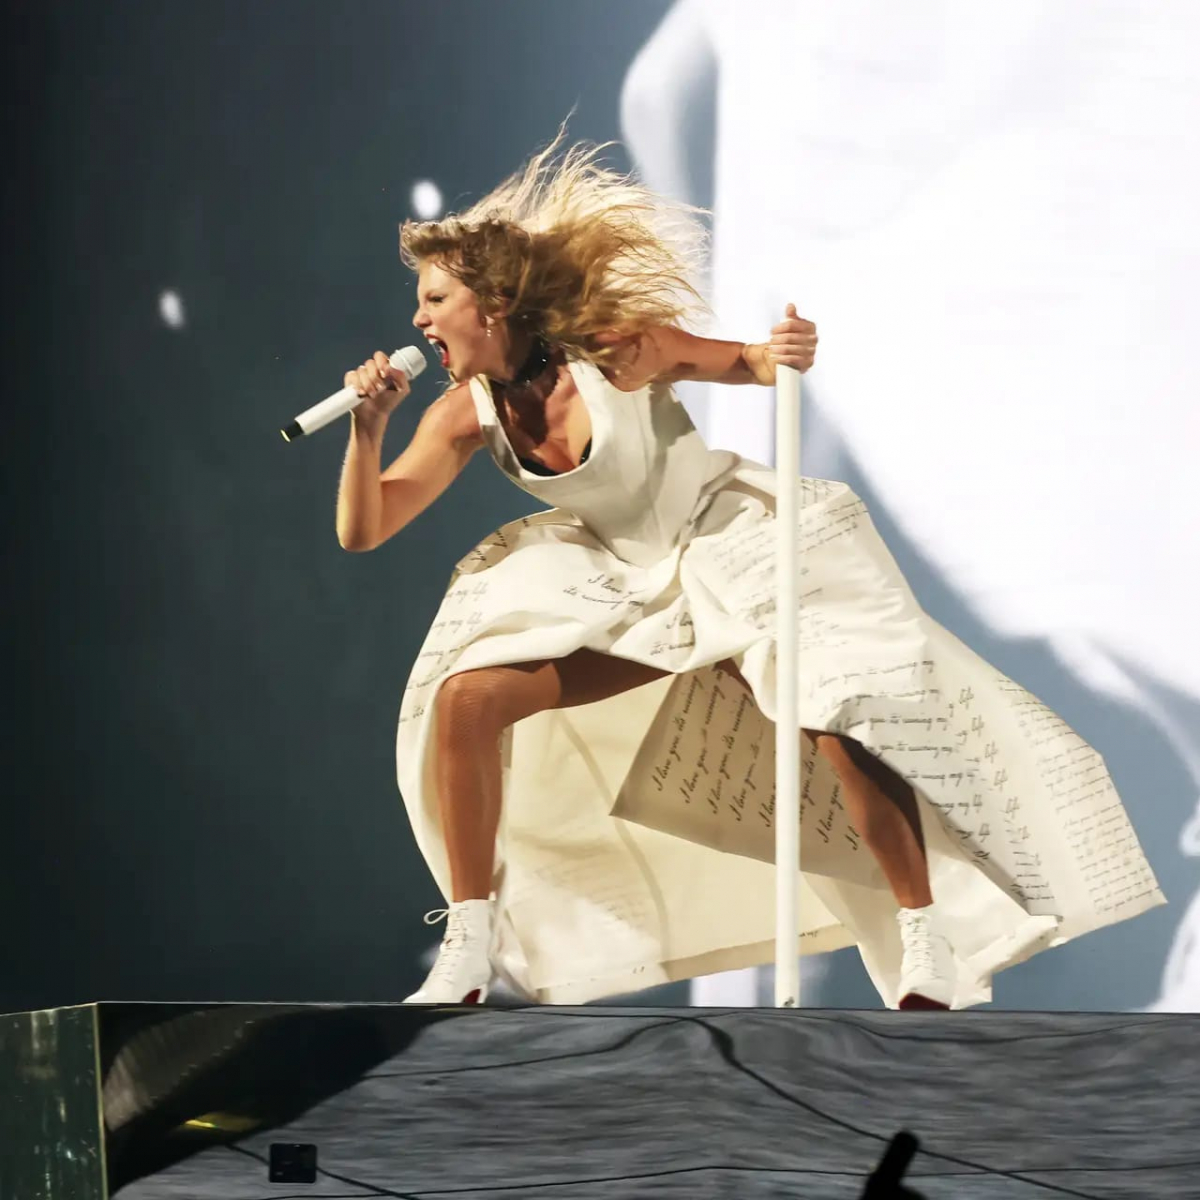 Imagem de apresentação de Taylor Swift: Faltam menos de 10 dias para o primeiro concerto em Portugal